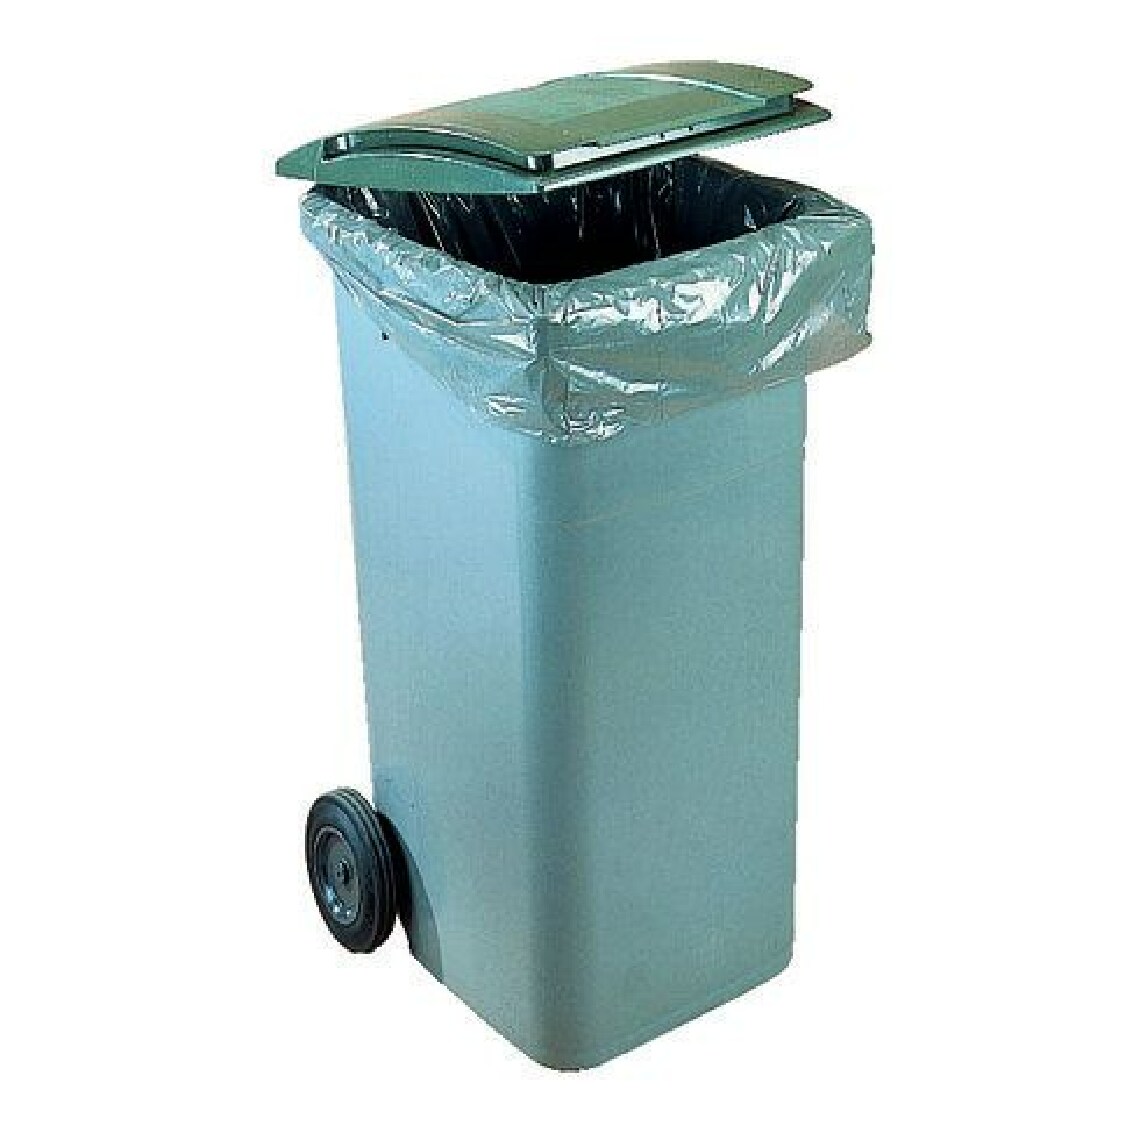 Jm Plast - Sac poubelle 80-120 litres pour conteneurs - paquet de 200 - Entretien intérieur